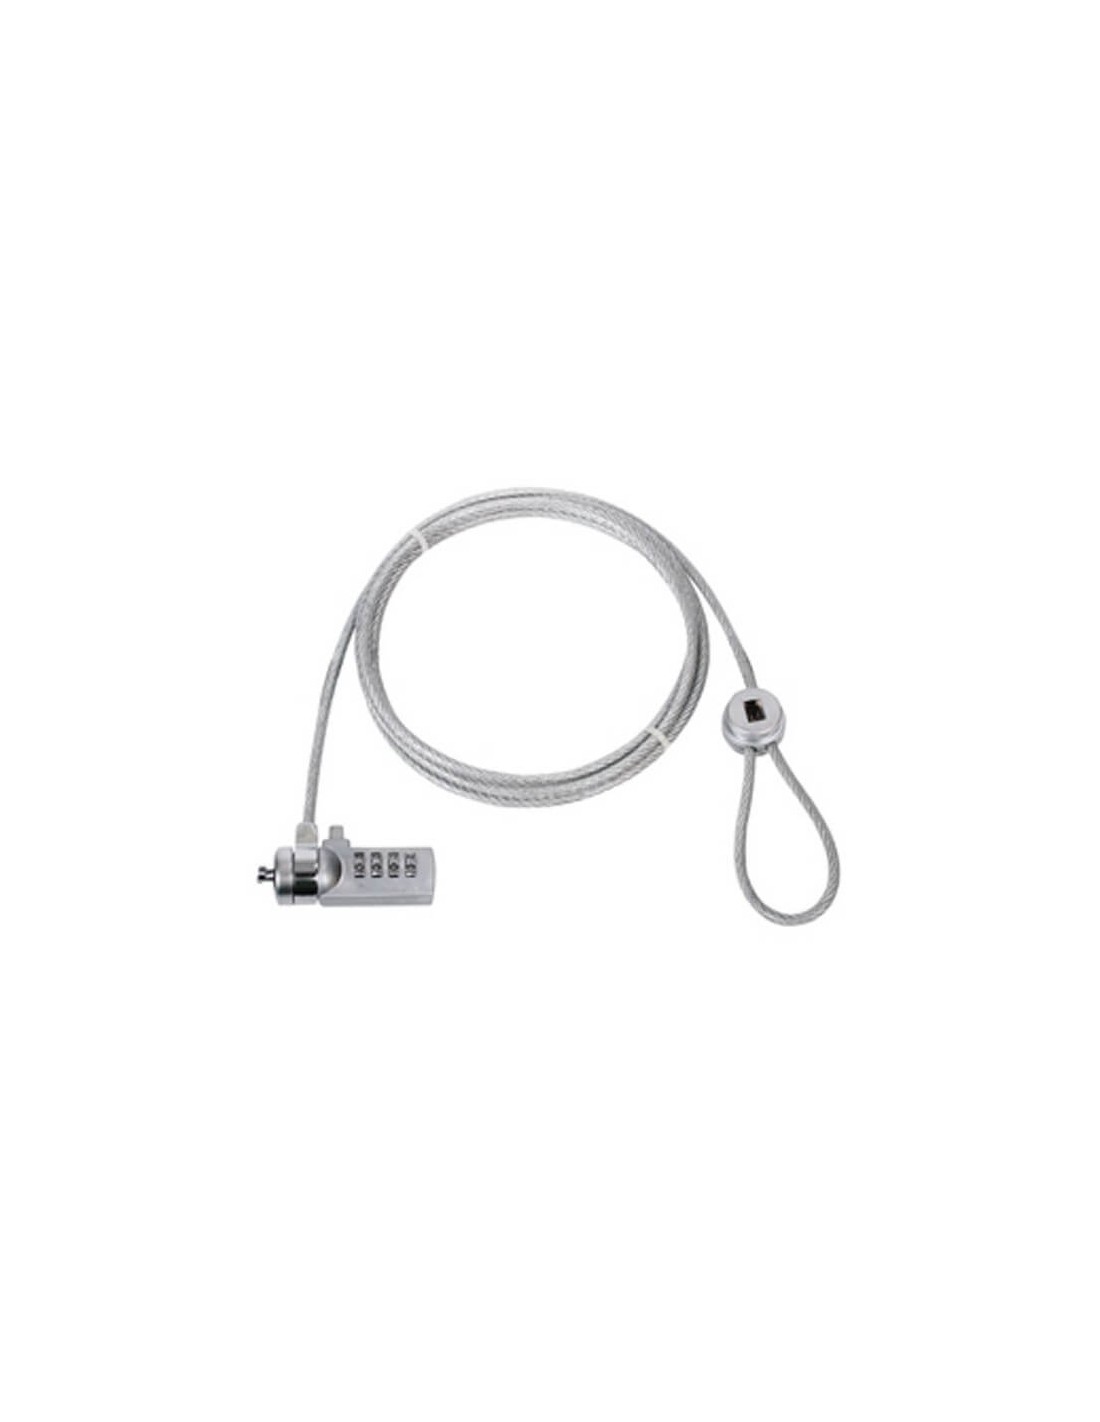 Câble verrouillage pc portable à clé (LSCABLE002) à 95,83 MAD -   MAROC